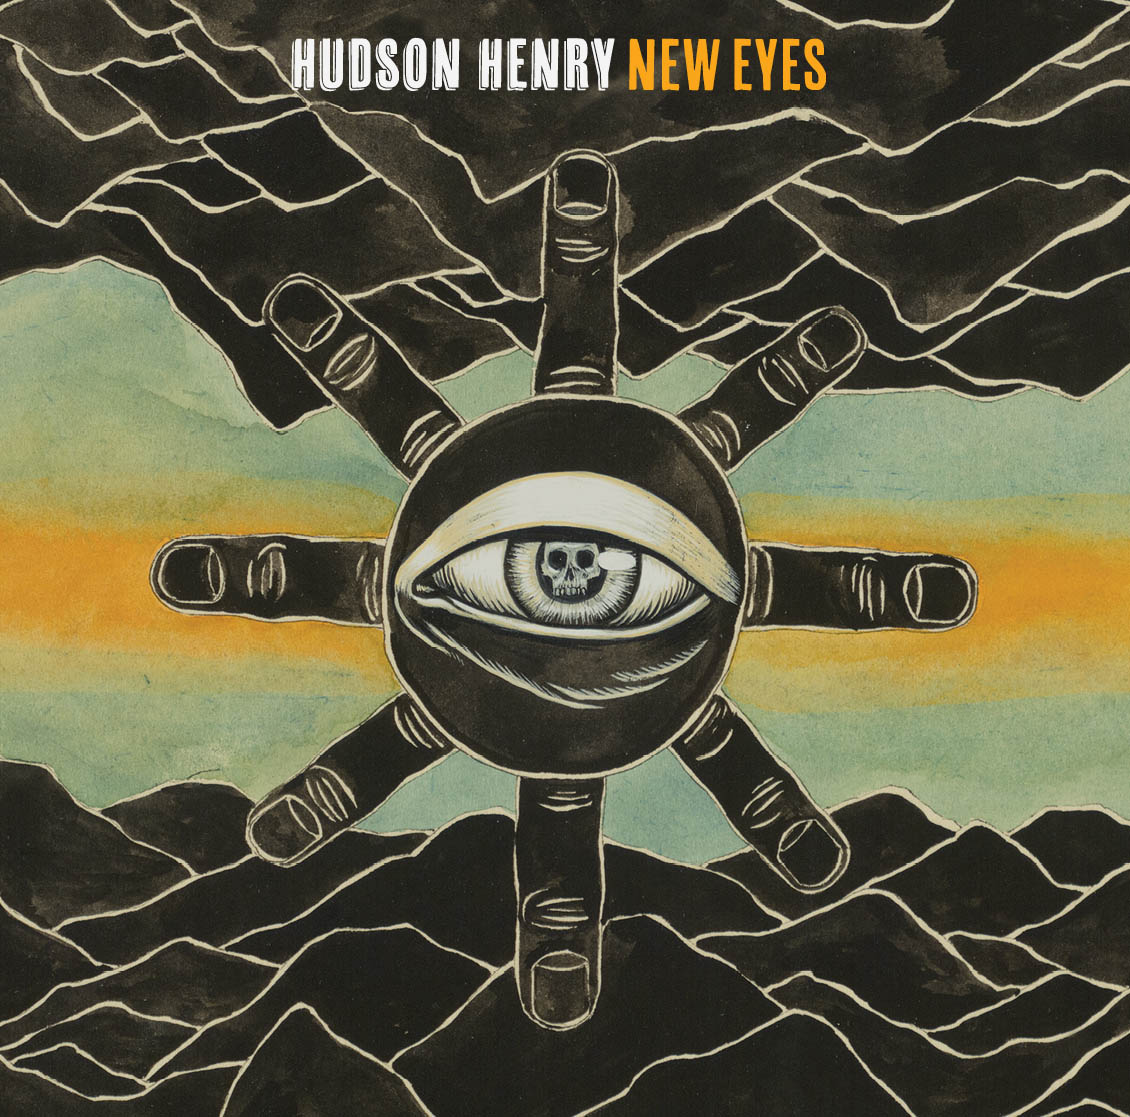 Vreny's student Hudson Henry released his album "New Eyes"